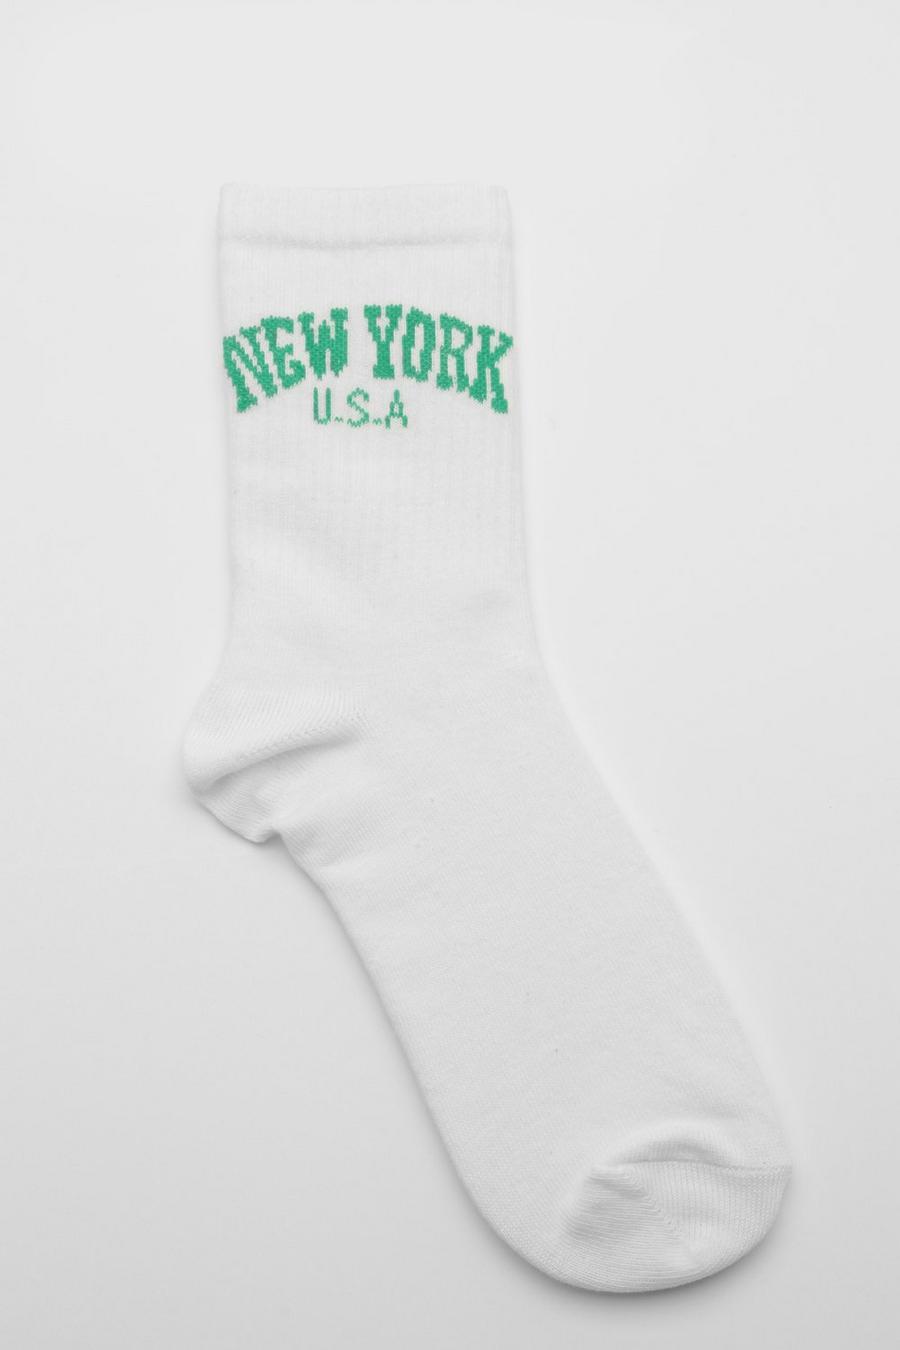 Chaussettes de sport à slogan New York, White